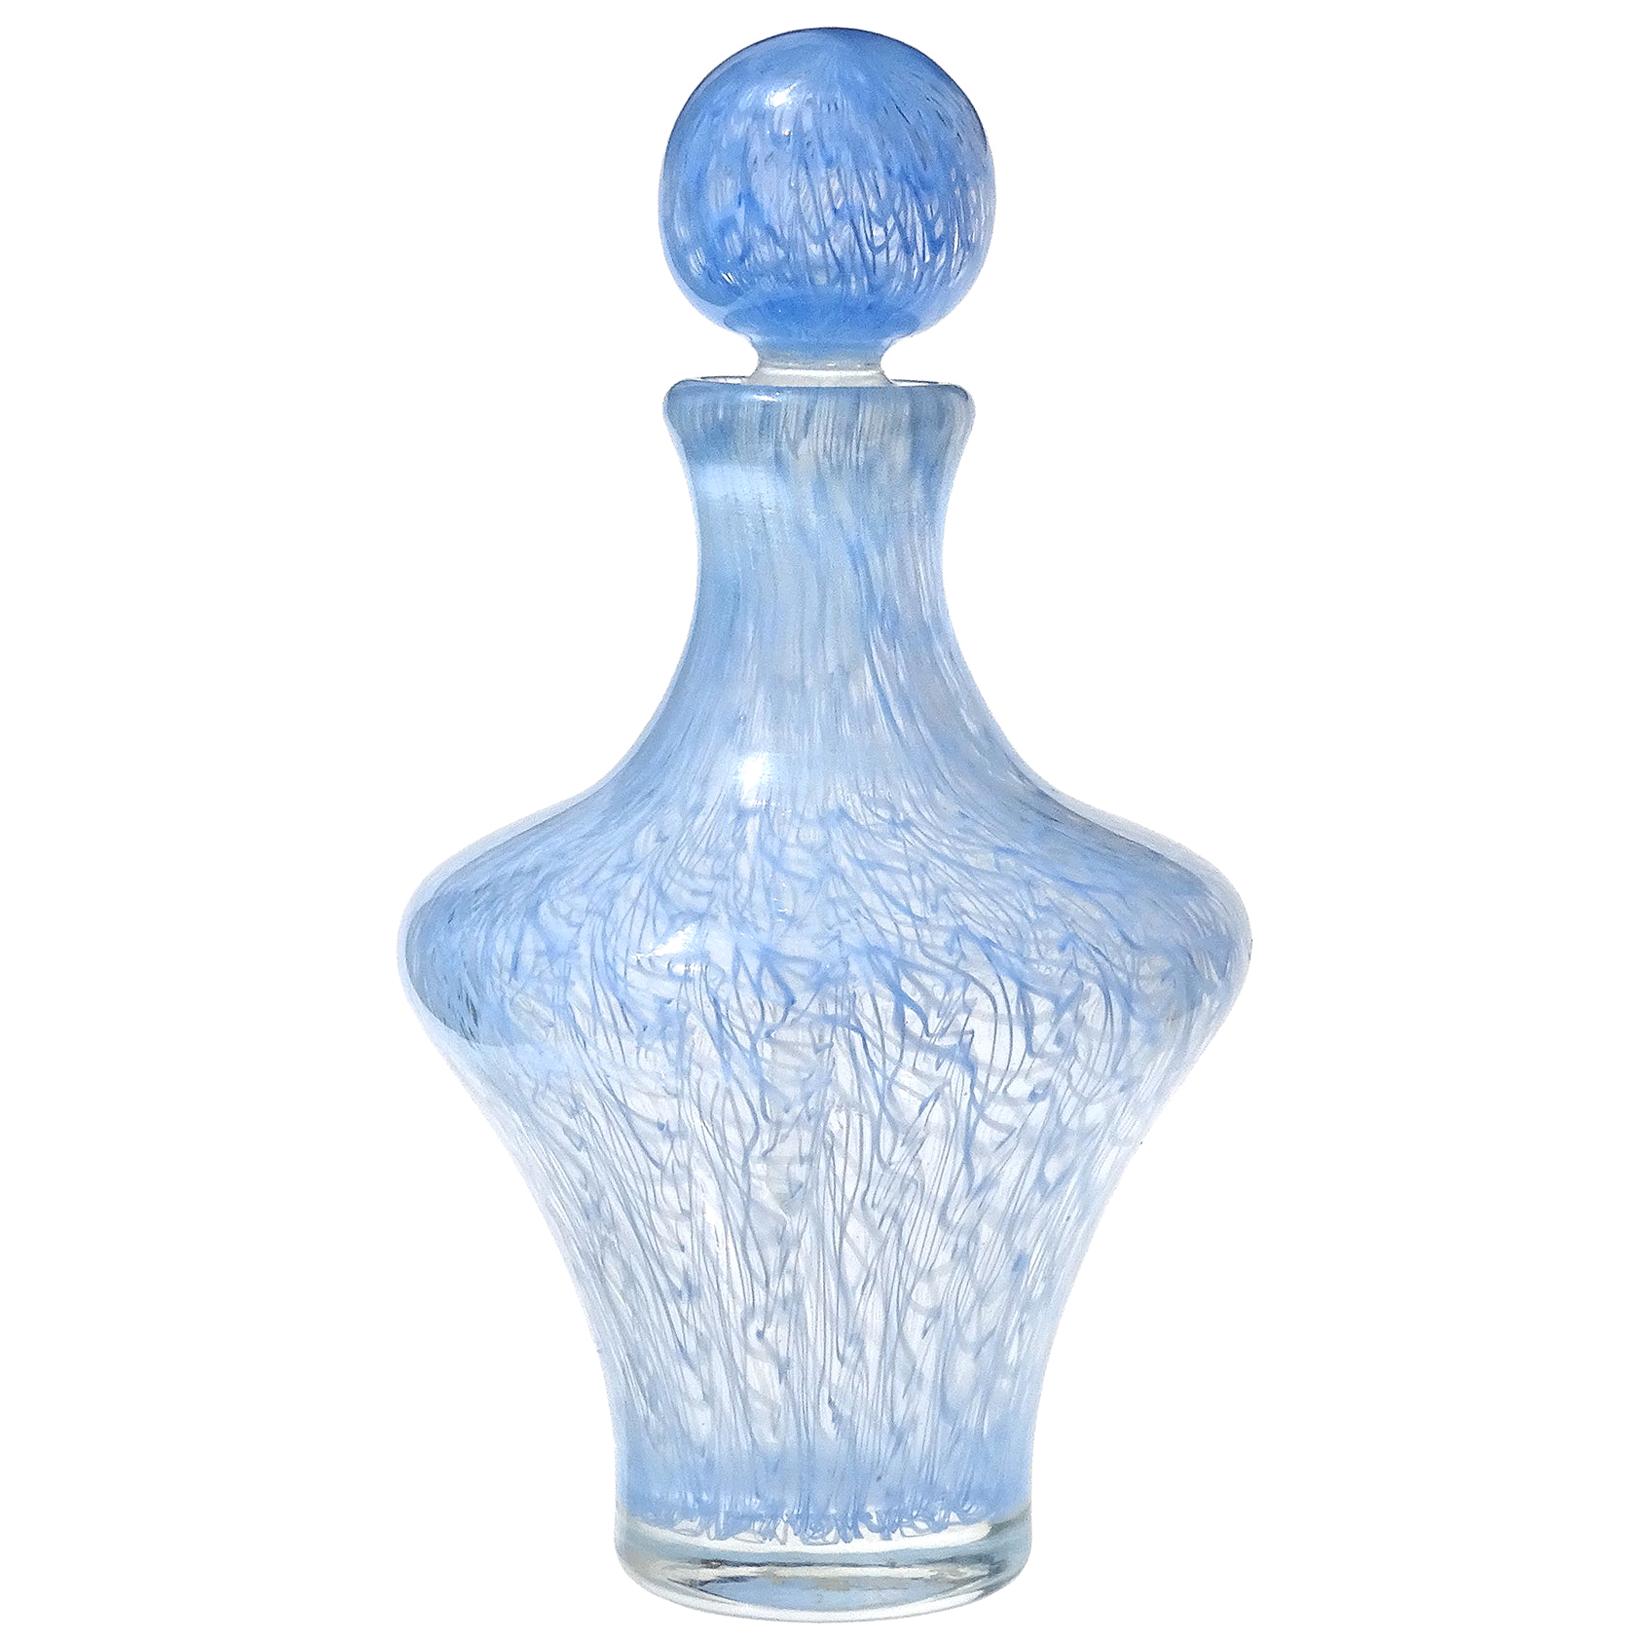 Seguso Murano 1954 Sky Blue Merletto Ribbons Italian Art Glass Perfume Bottle